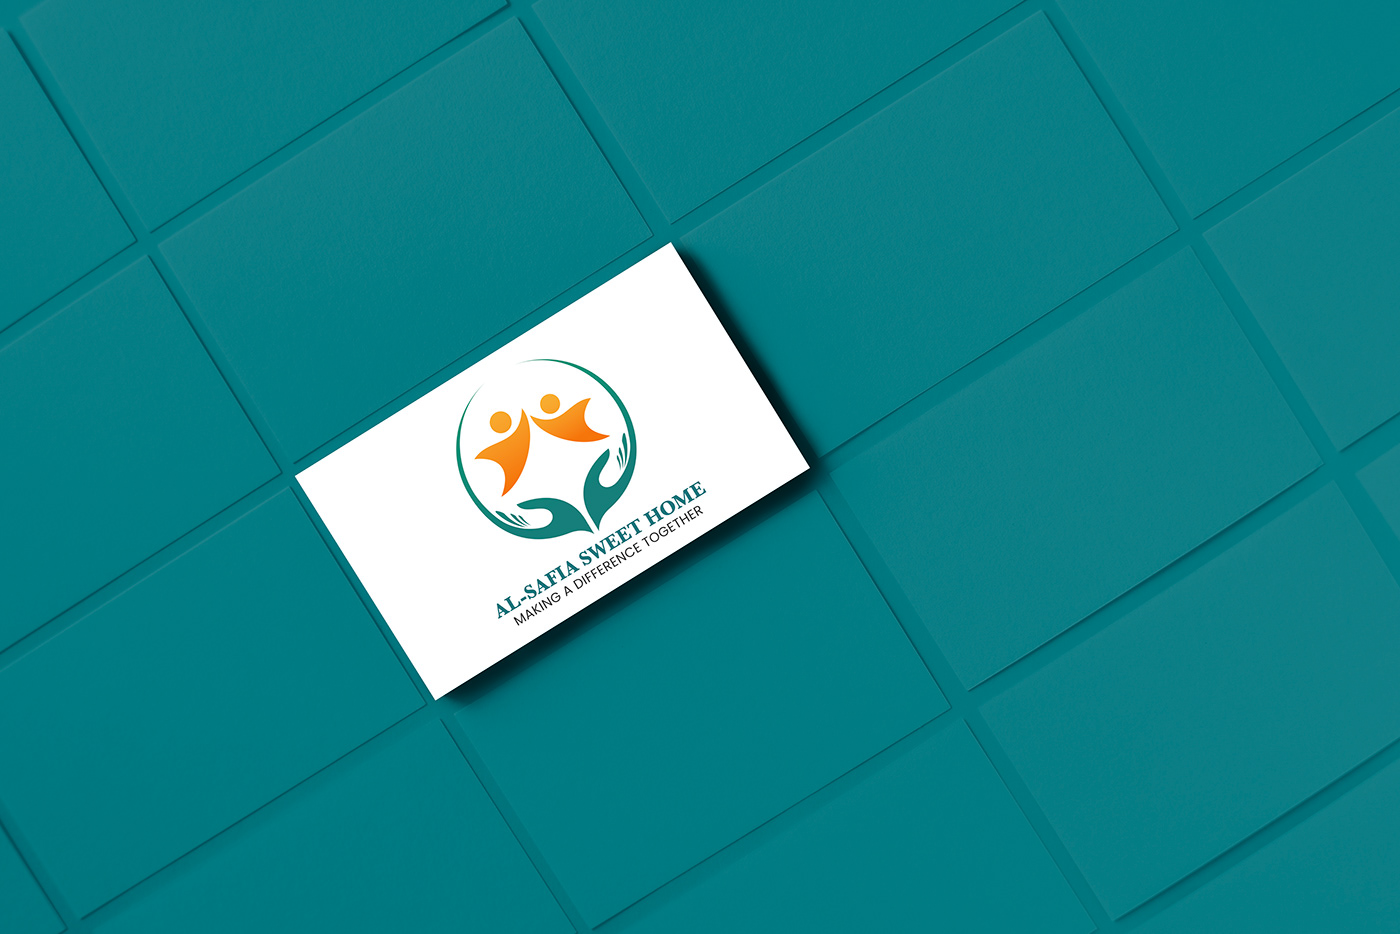 Logo Design brand identity Advertising  Brand Design business card brochure flyer letterhead envelope Stationery